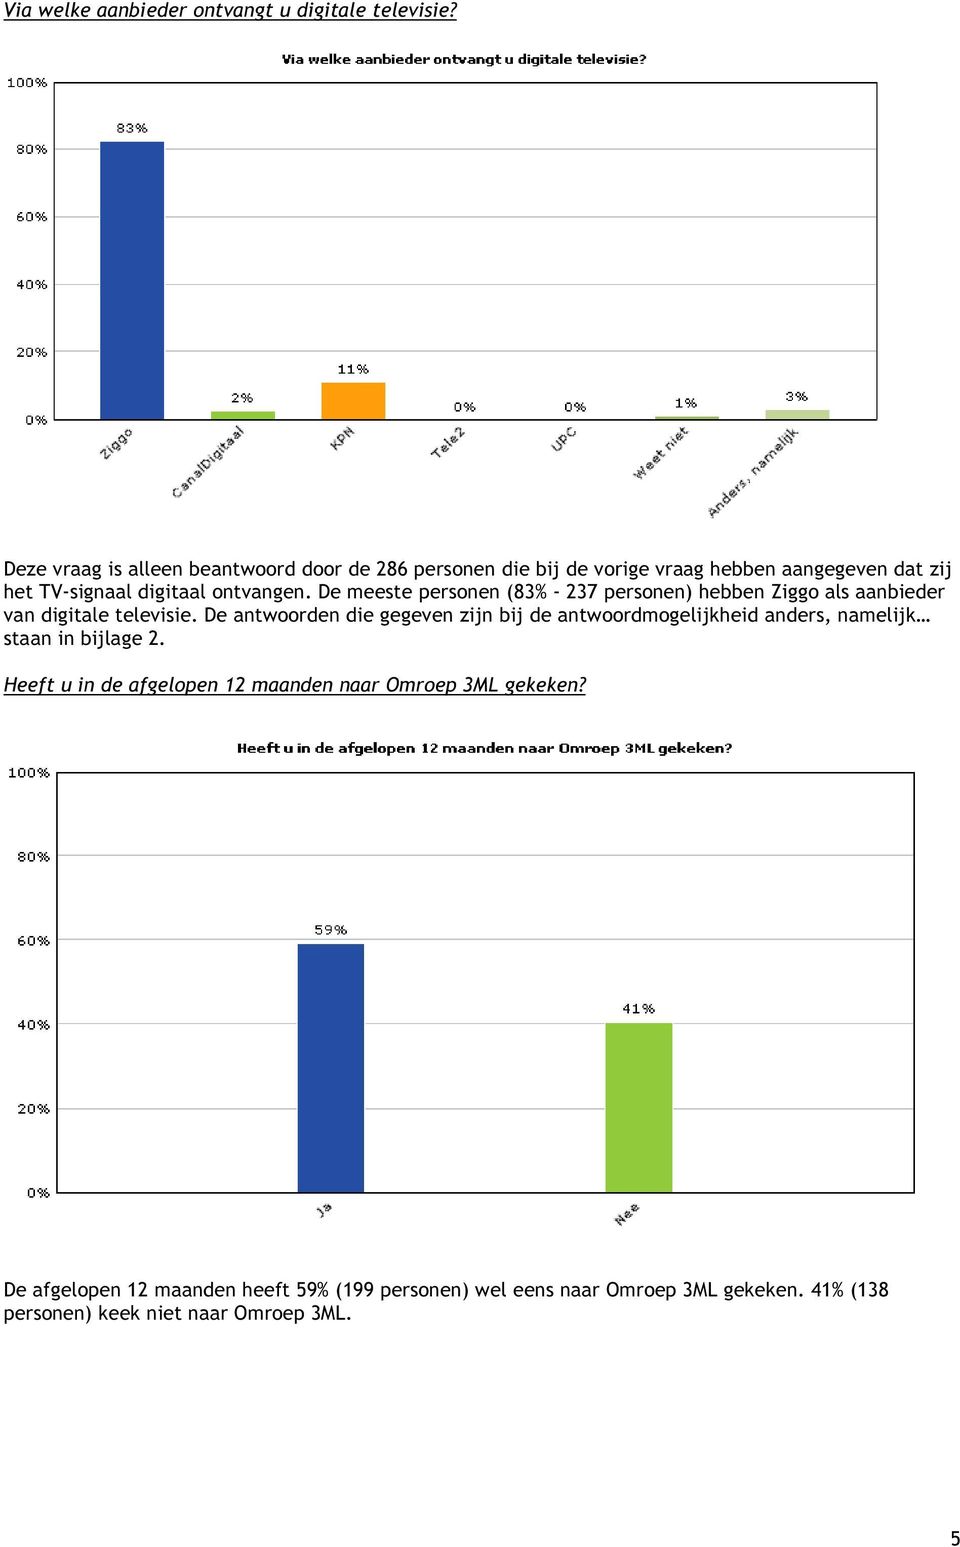 De meeste personen (83% - 237 personen) hebben Ziggo als aanbieder van digitale televisie.